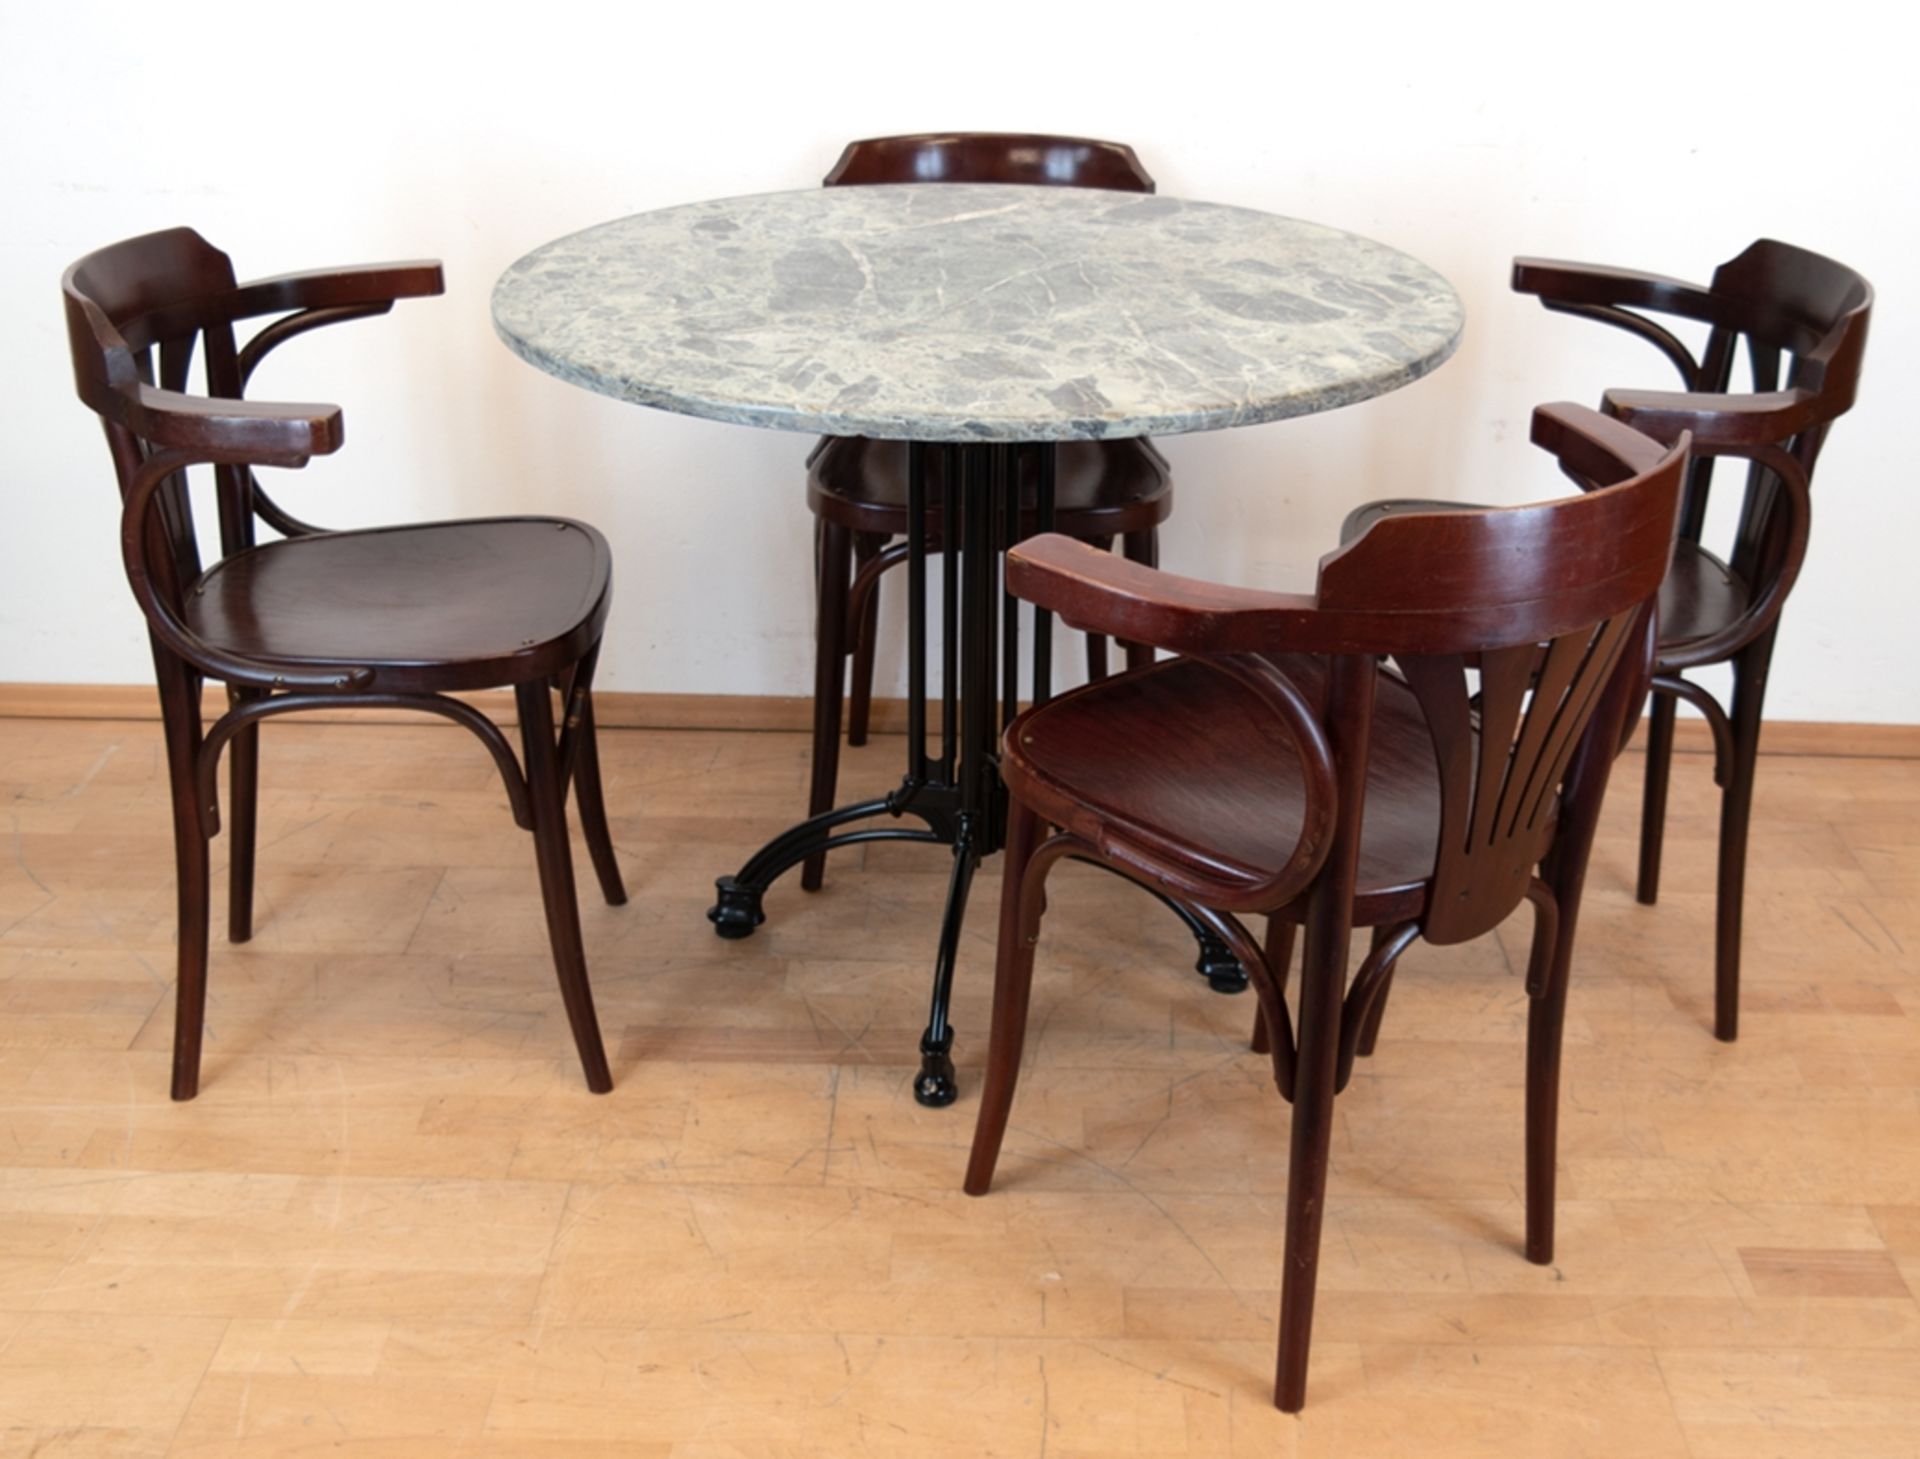 Gartentisch mit 4 Stühlen, runder Tisch mit grüner Marmorplatte (Rand leicht bestoßen) auf Metallge